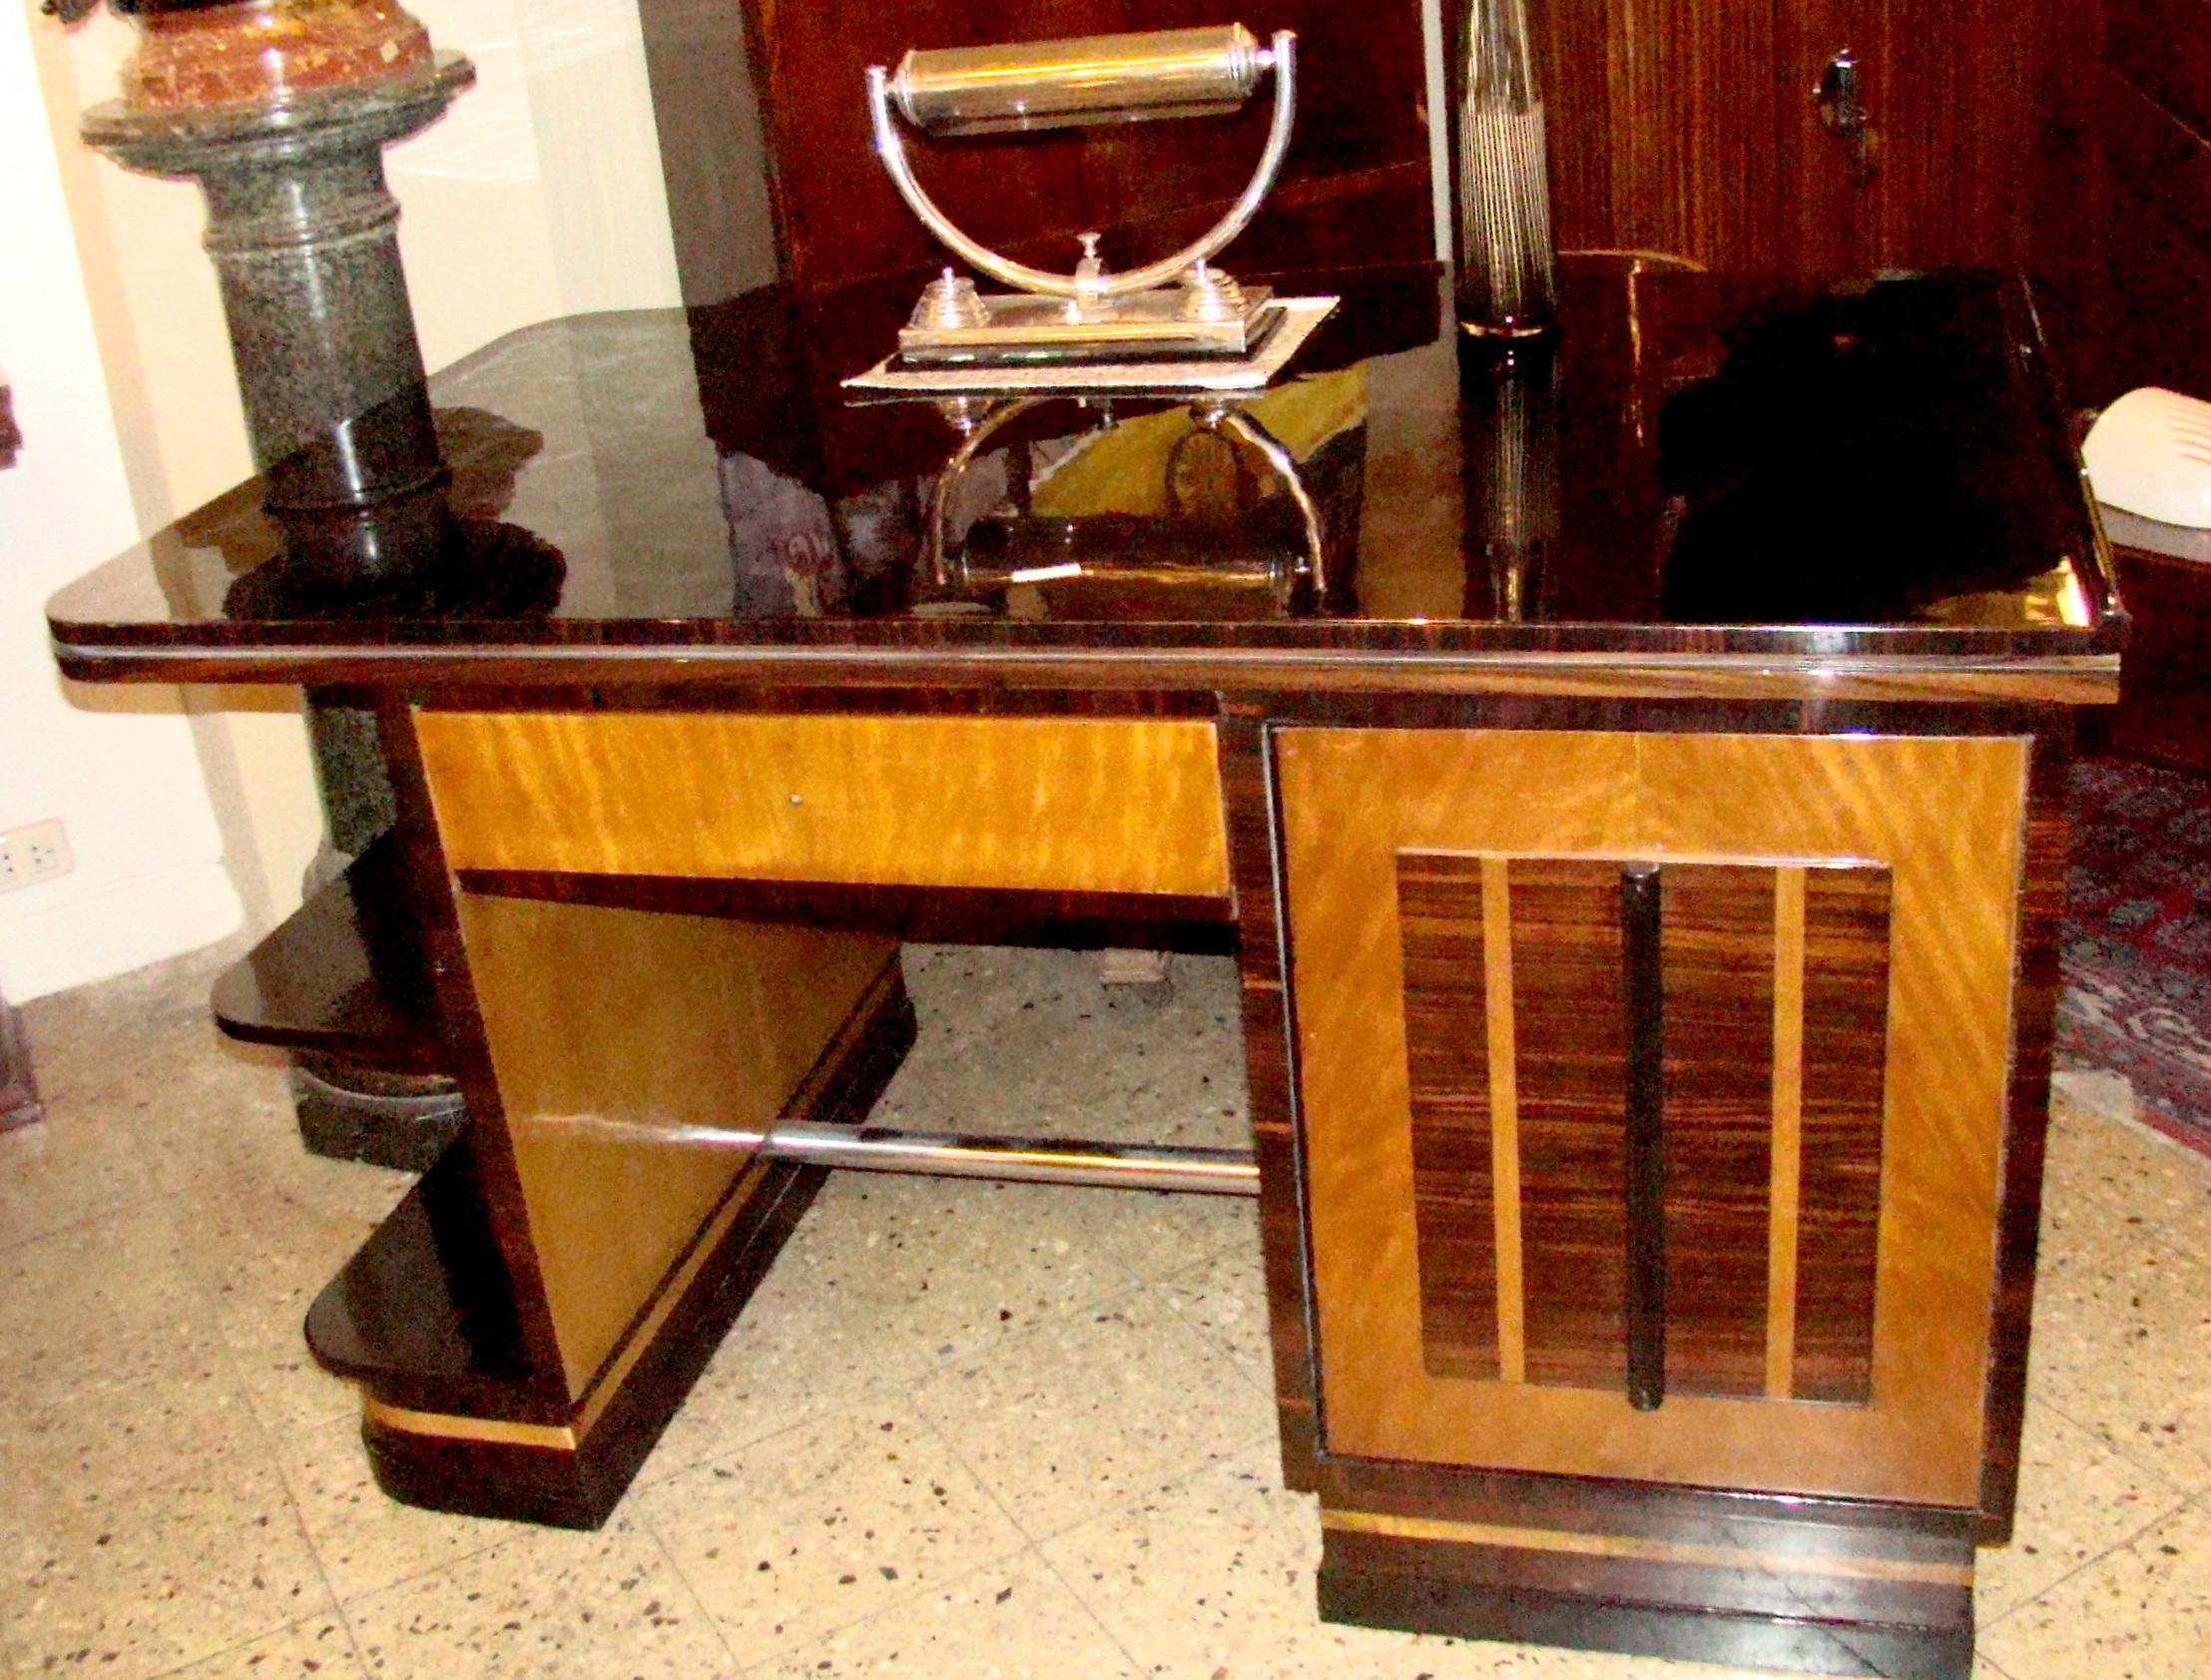 Französischer Schreibtisch-Stil: Art Deco
Jahr 1920
MATERIAL: Holz und Chrom
Er ist ein eleganter und anspruchsvoller Traumschreibtisch. 
Die Qualität der Möbel und das verwendete exotische Holz machen sie einzigartig. Es ist eine Ikone von